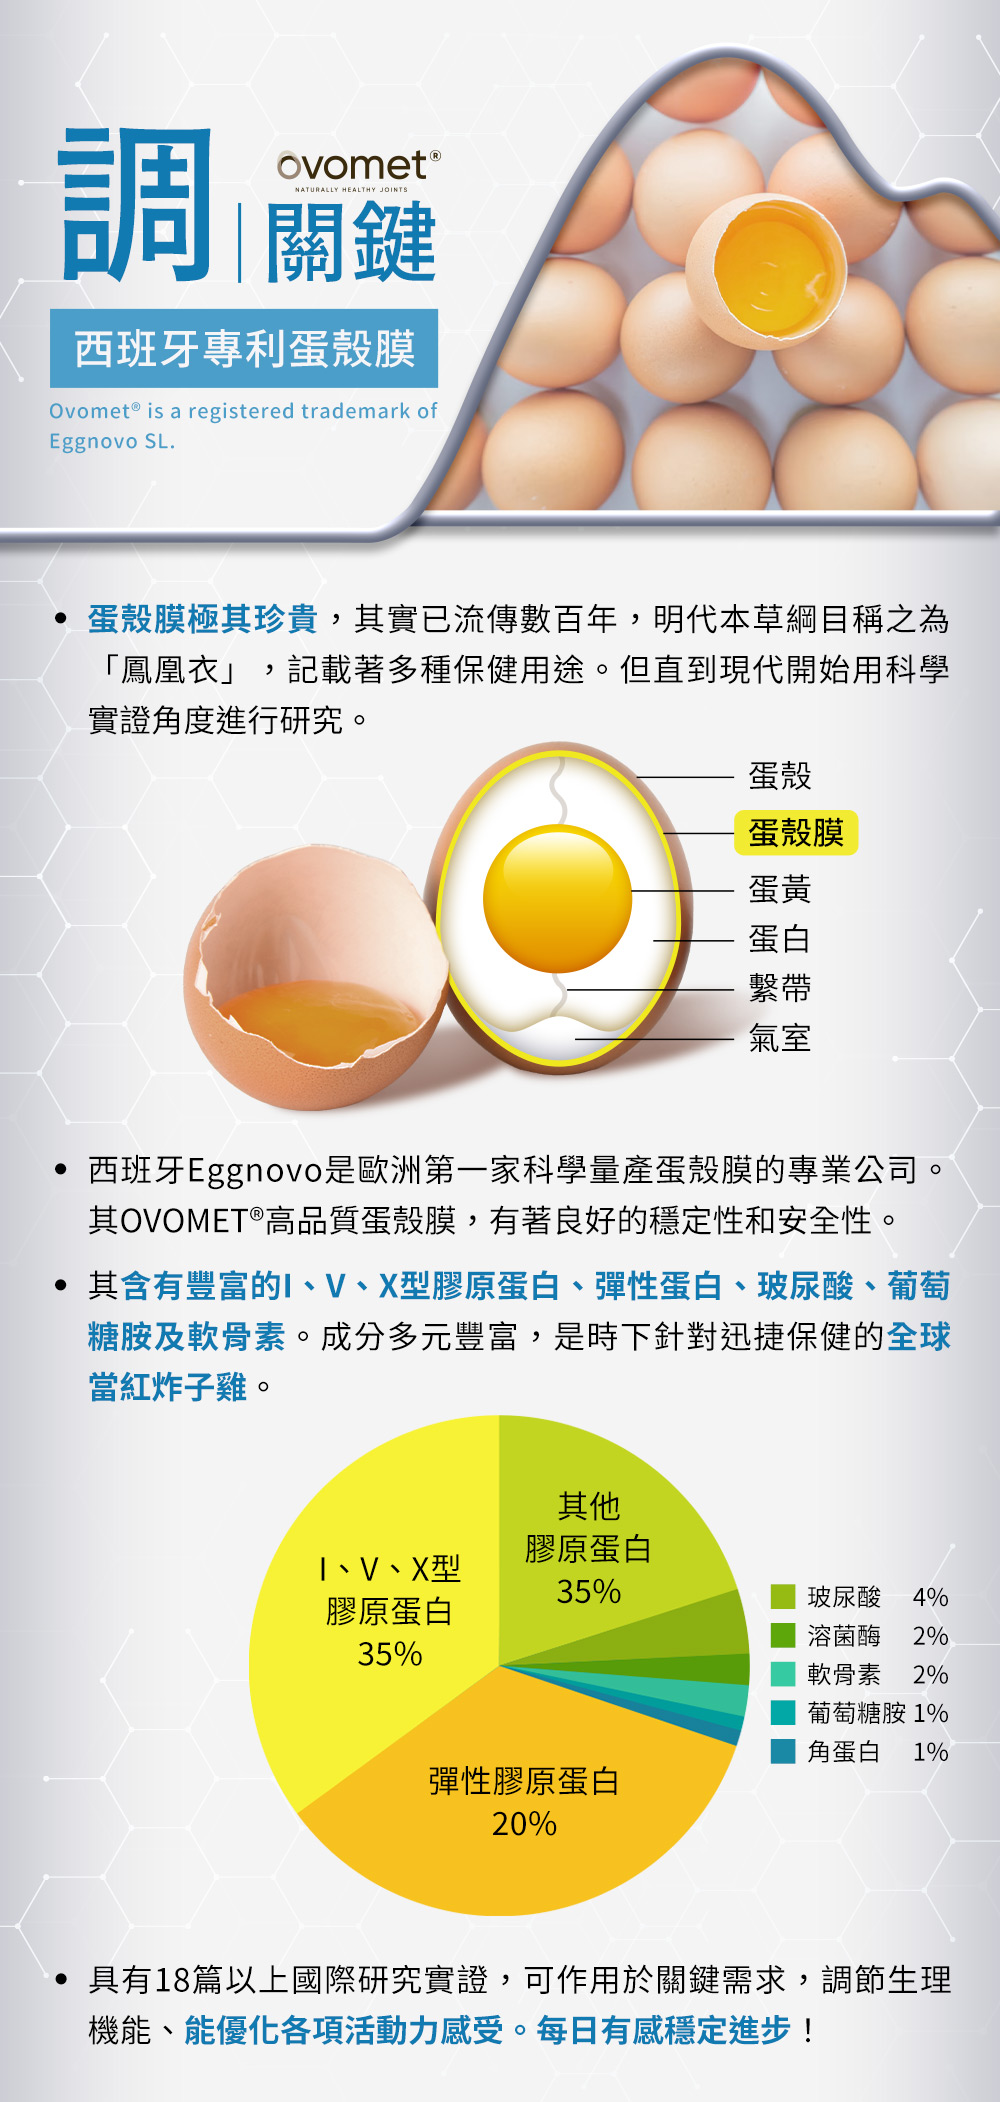 調關鍵，西班牙專利蛋殼膜：蛋殼膜含有豐富的I、V、X型膠原蛋白、彈性蛋白、玻尿酸、葡萄糖胺及軟骨素，是時下針對行動力保健的全球當紅炸子雞。